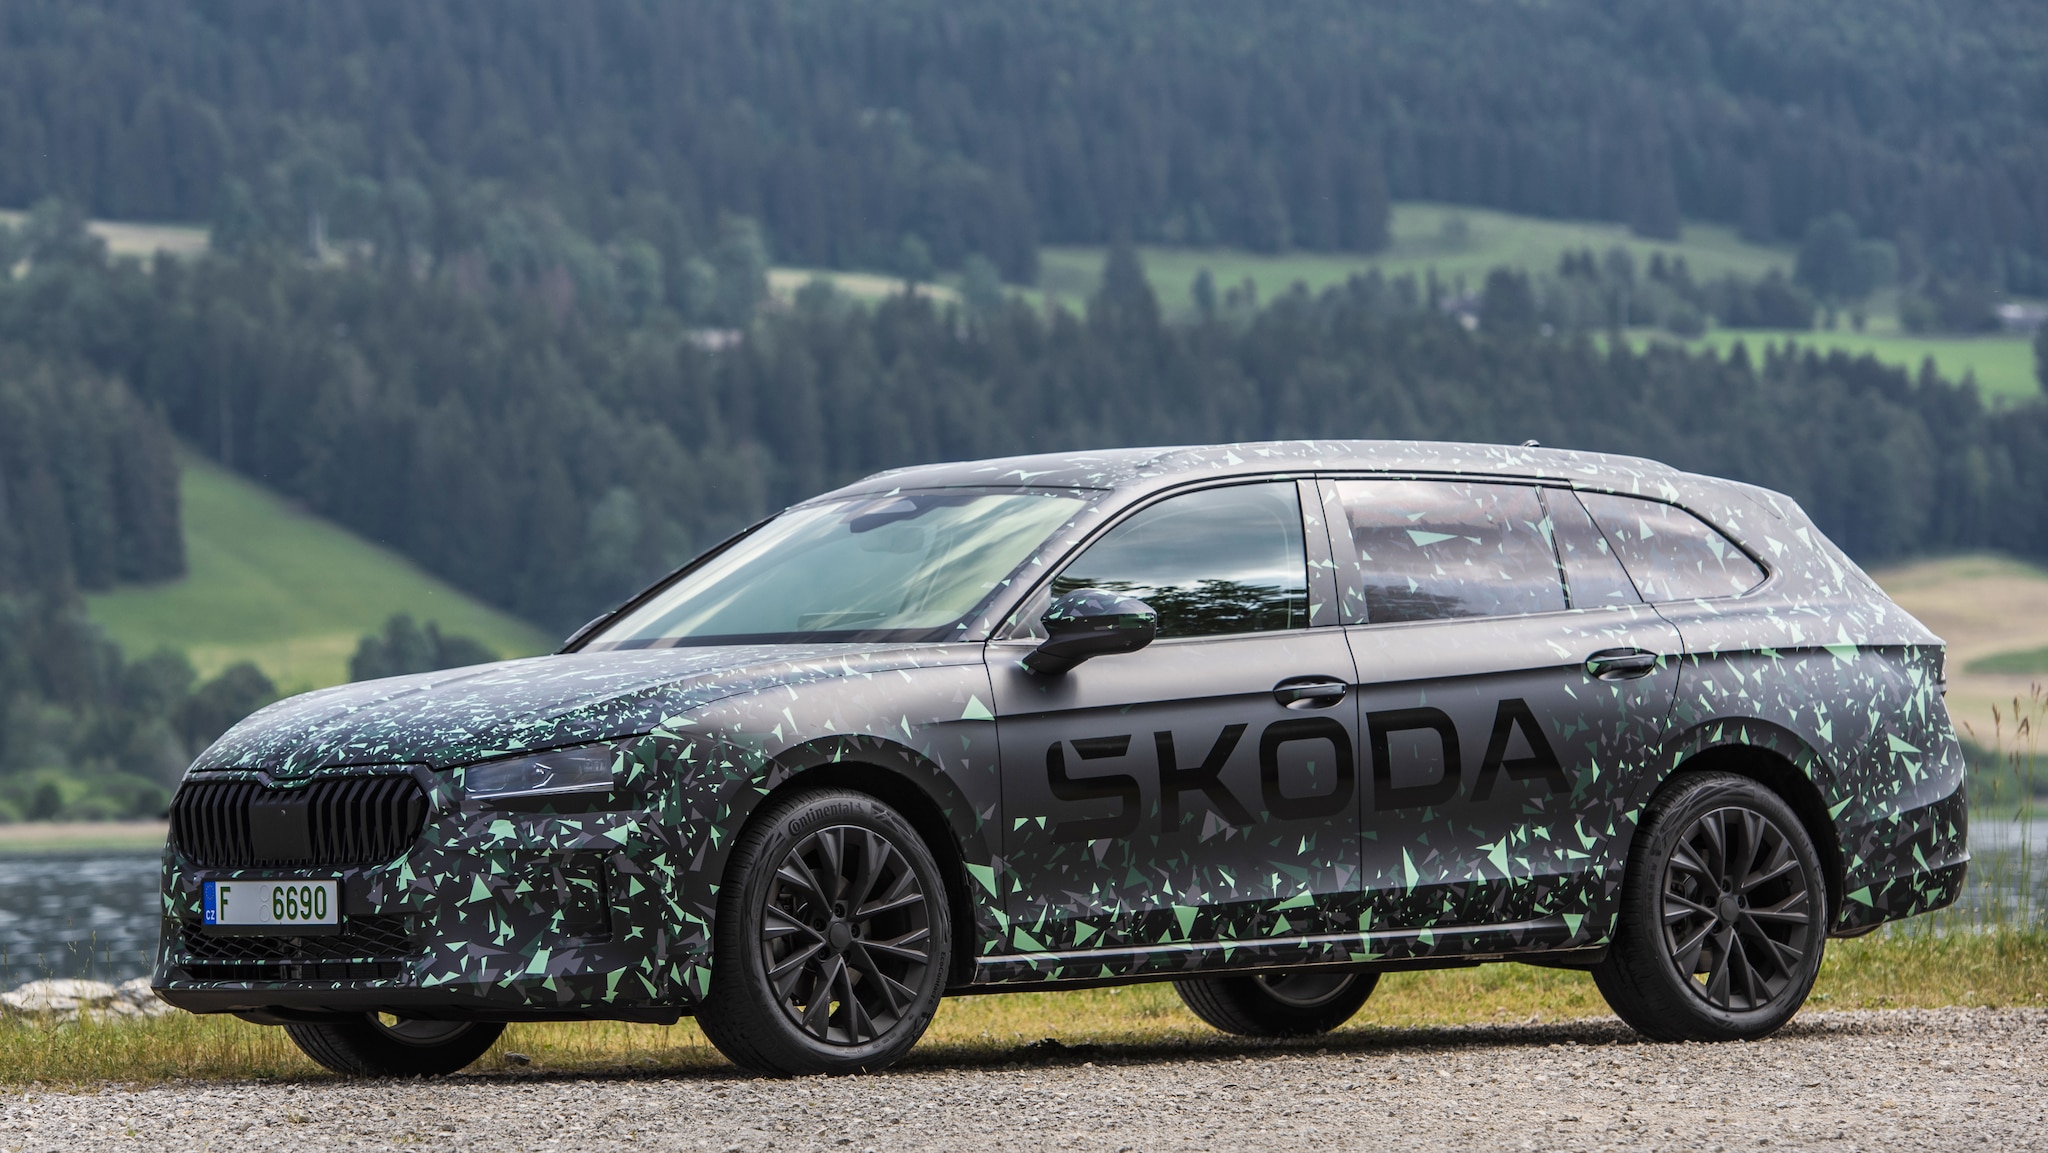 Der neue Škoda Superb Combi: Luxus ganz groß